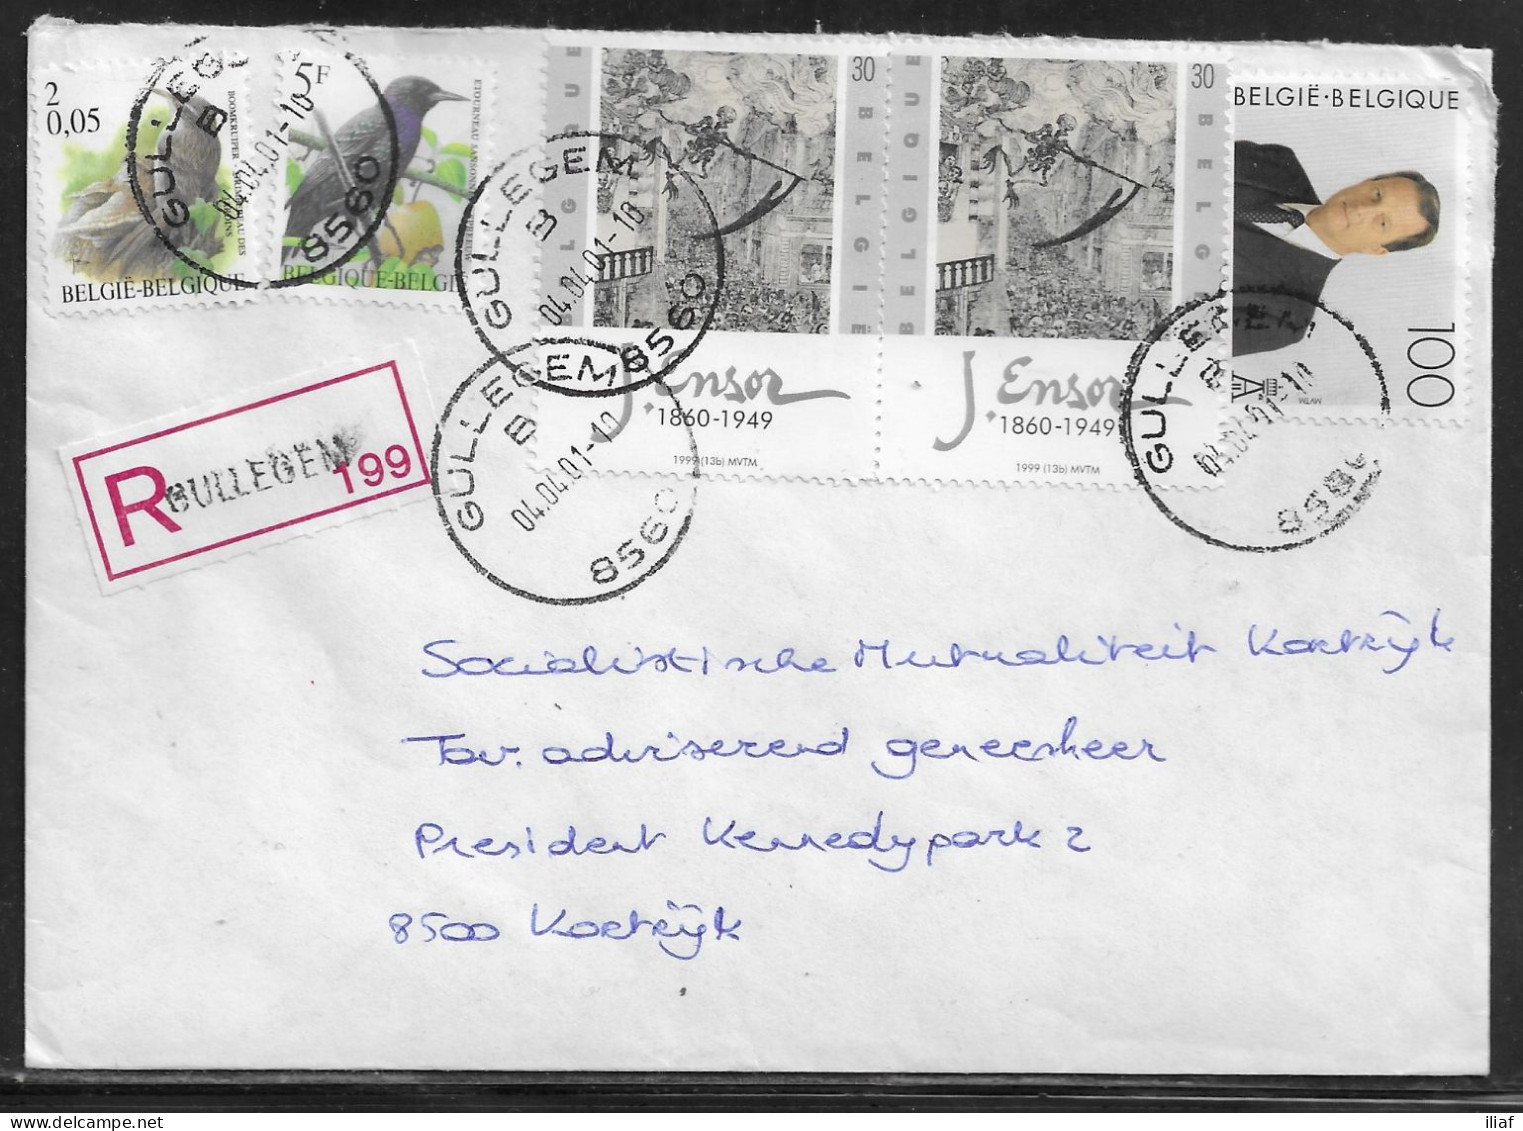 Belgium. Stamps Mi. 2970, Mi. 2690, Mi. 2882, Mi. 2628 on Registered Letter Sent From Gullegem 04.04.2001 for Kortrijk - Briefe U. Dokumente